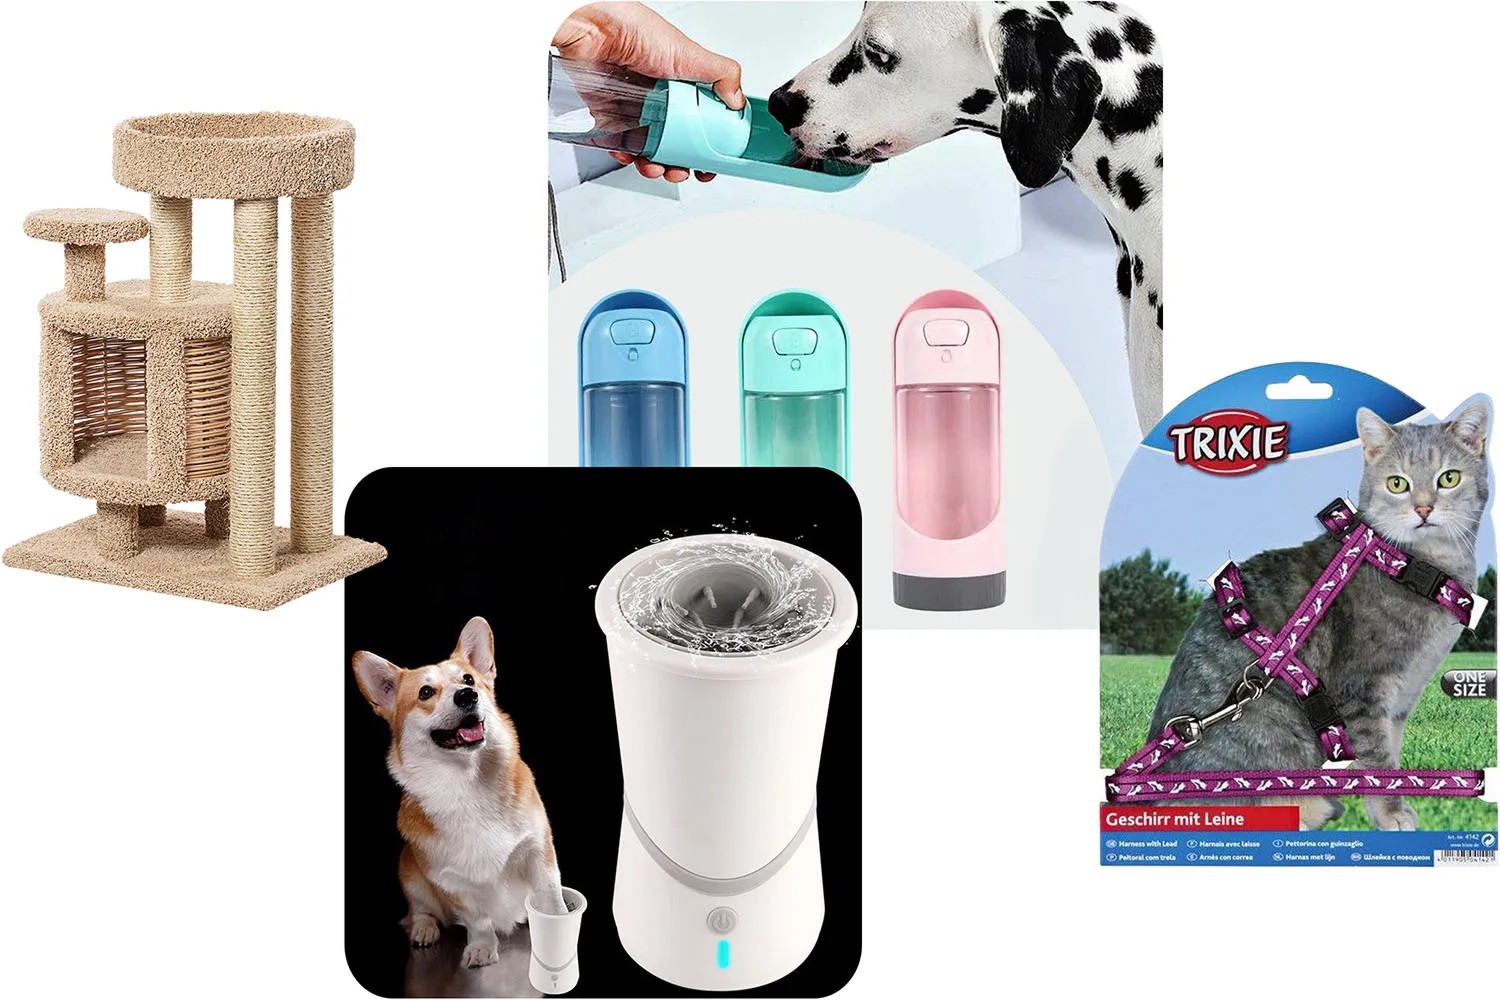 15 функциональных товаров для кошек и собак со скидкой | Glamour